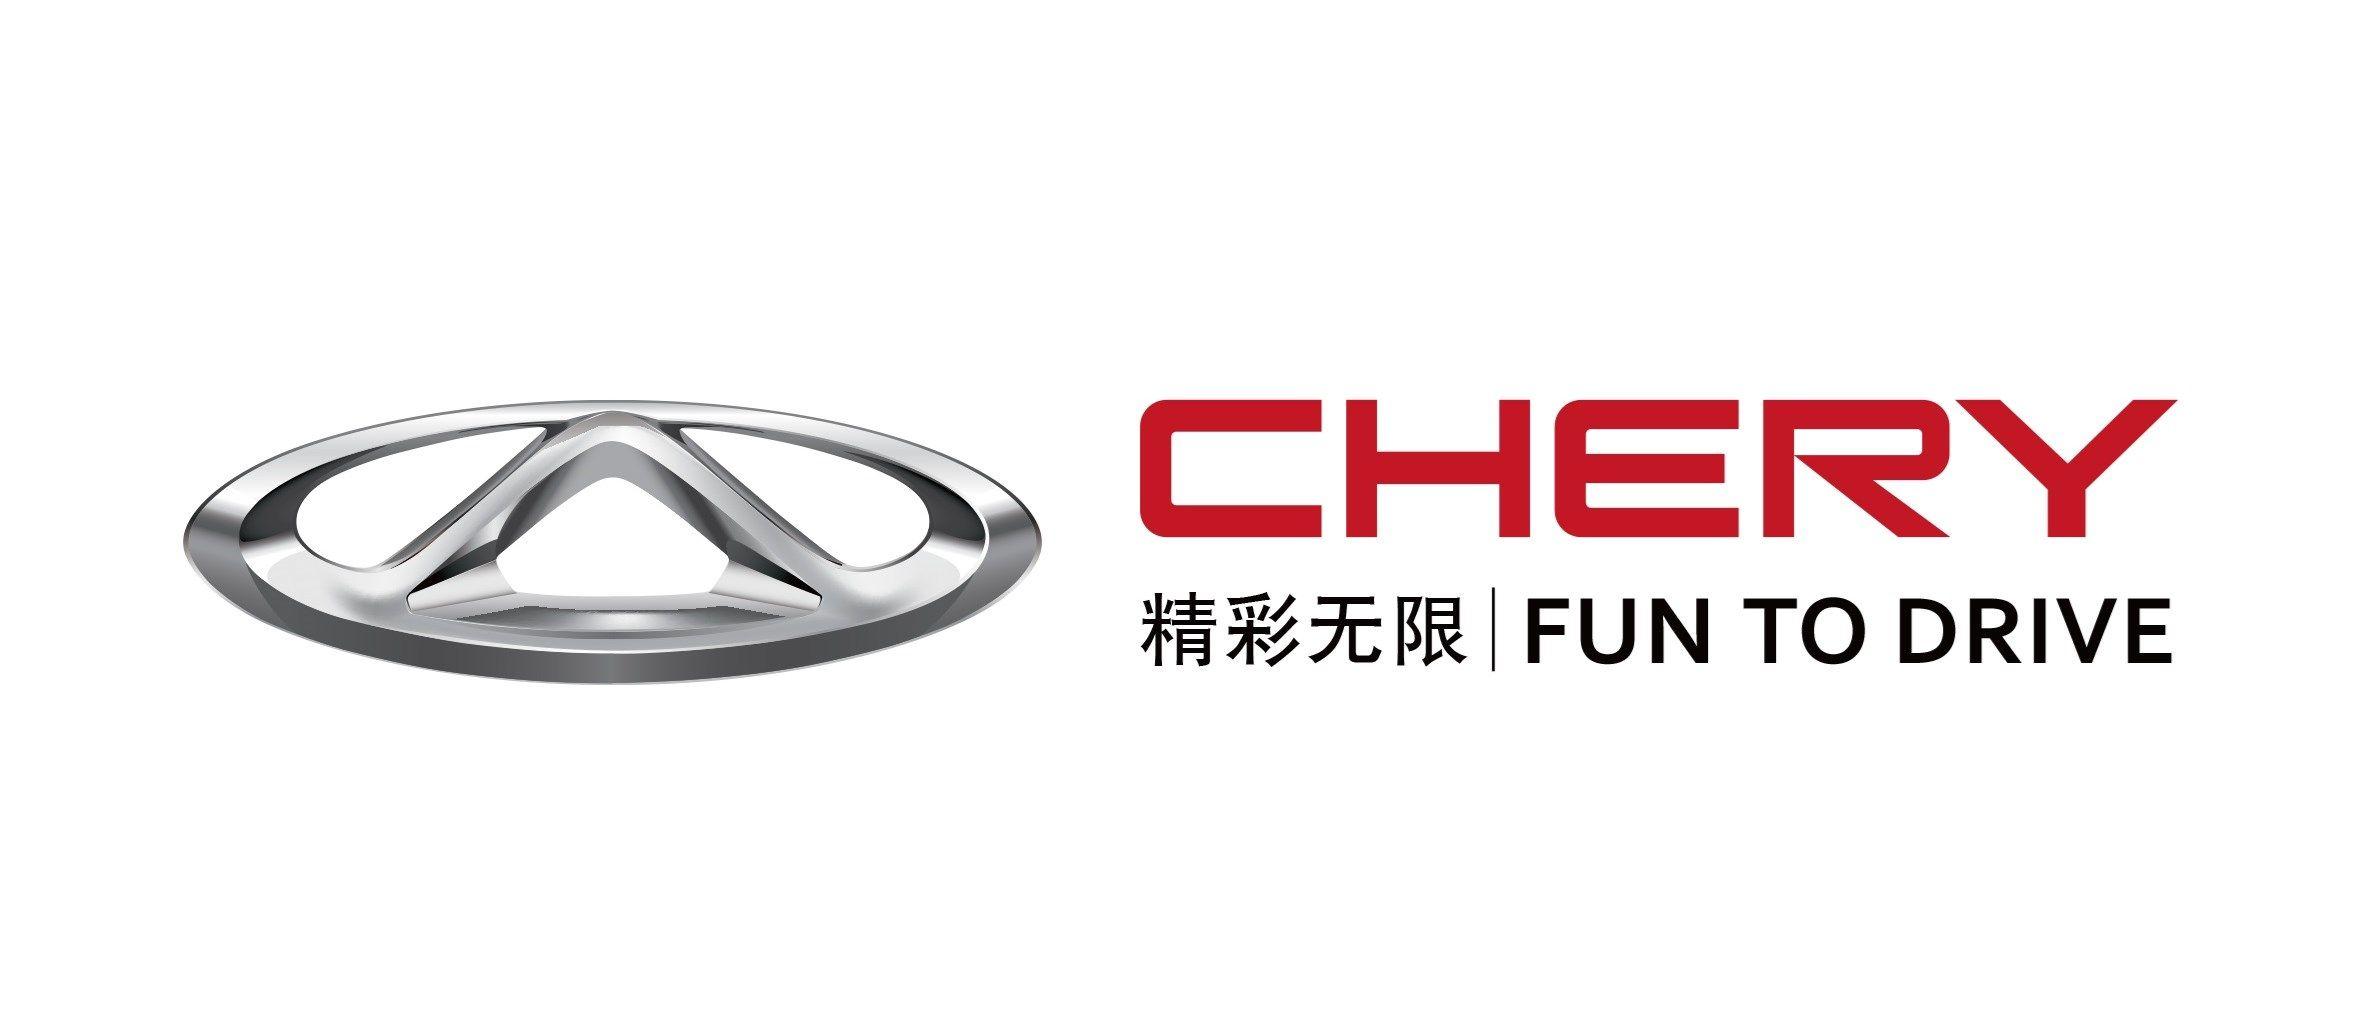 Chery Logo - Chery Automobile Co., Ltd - full profile - Car Design News